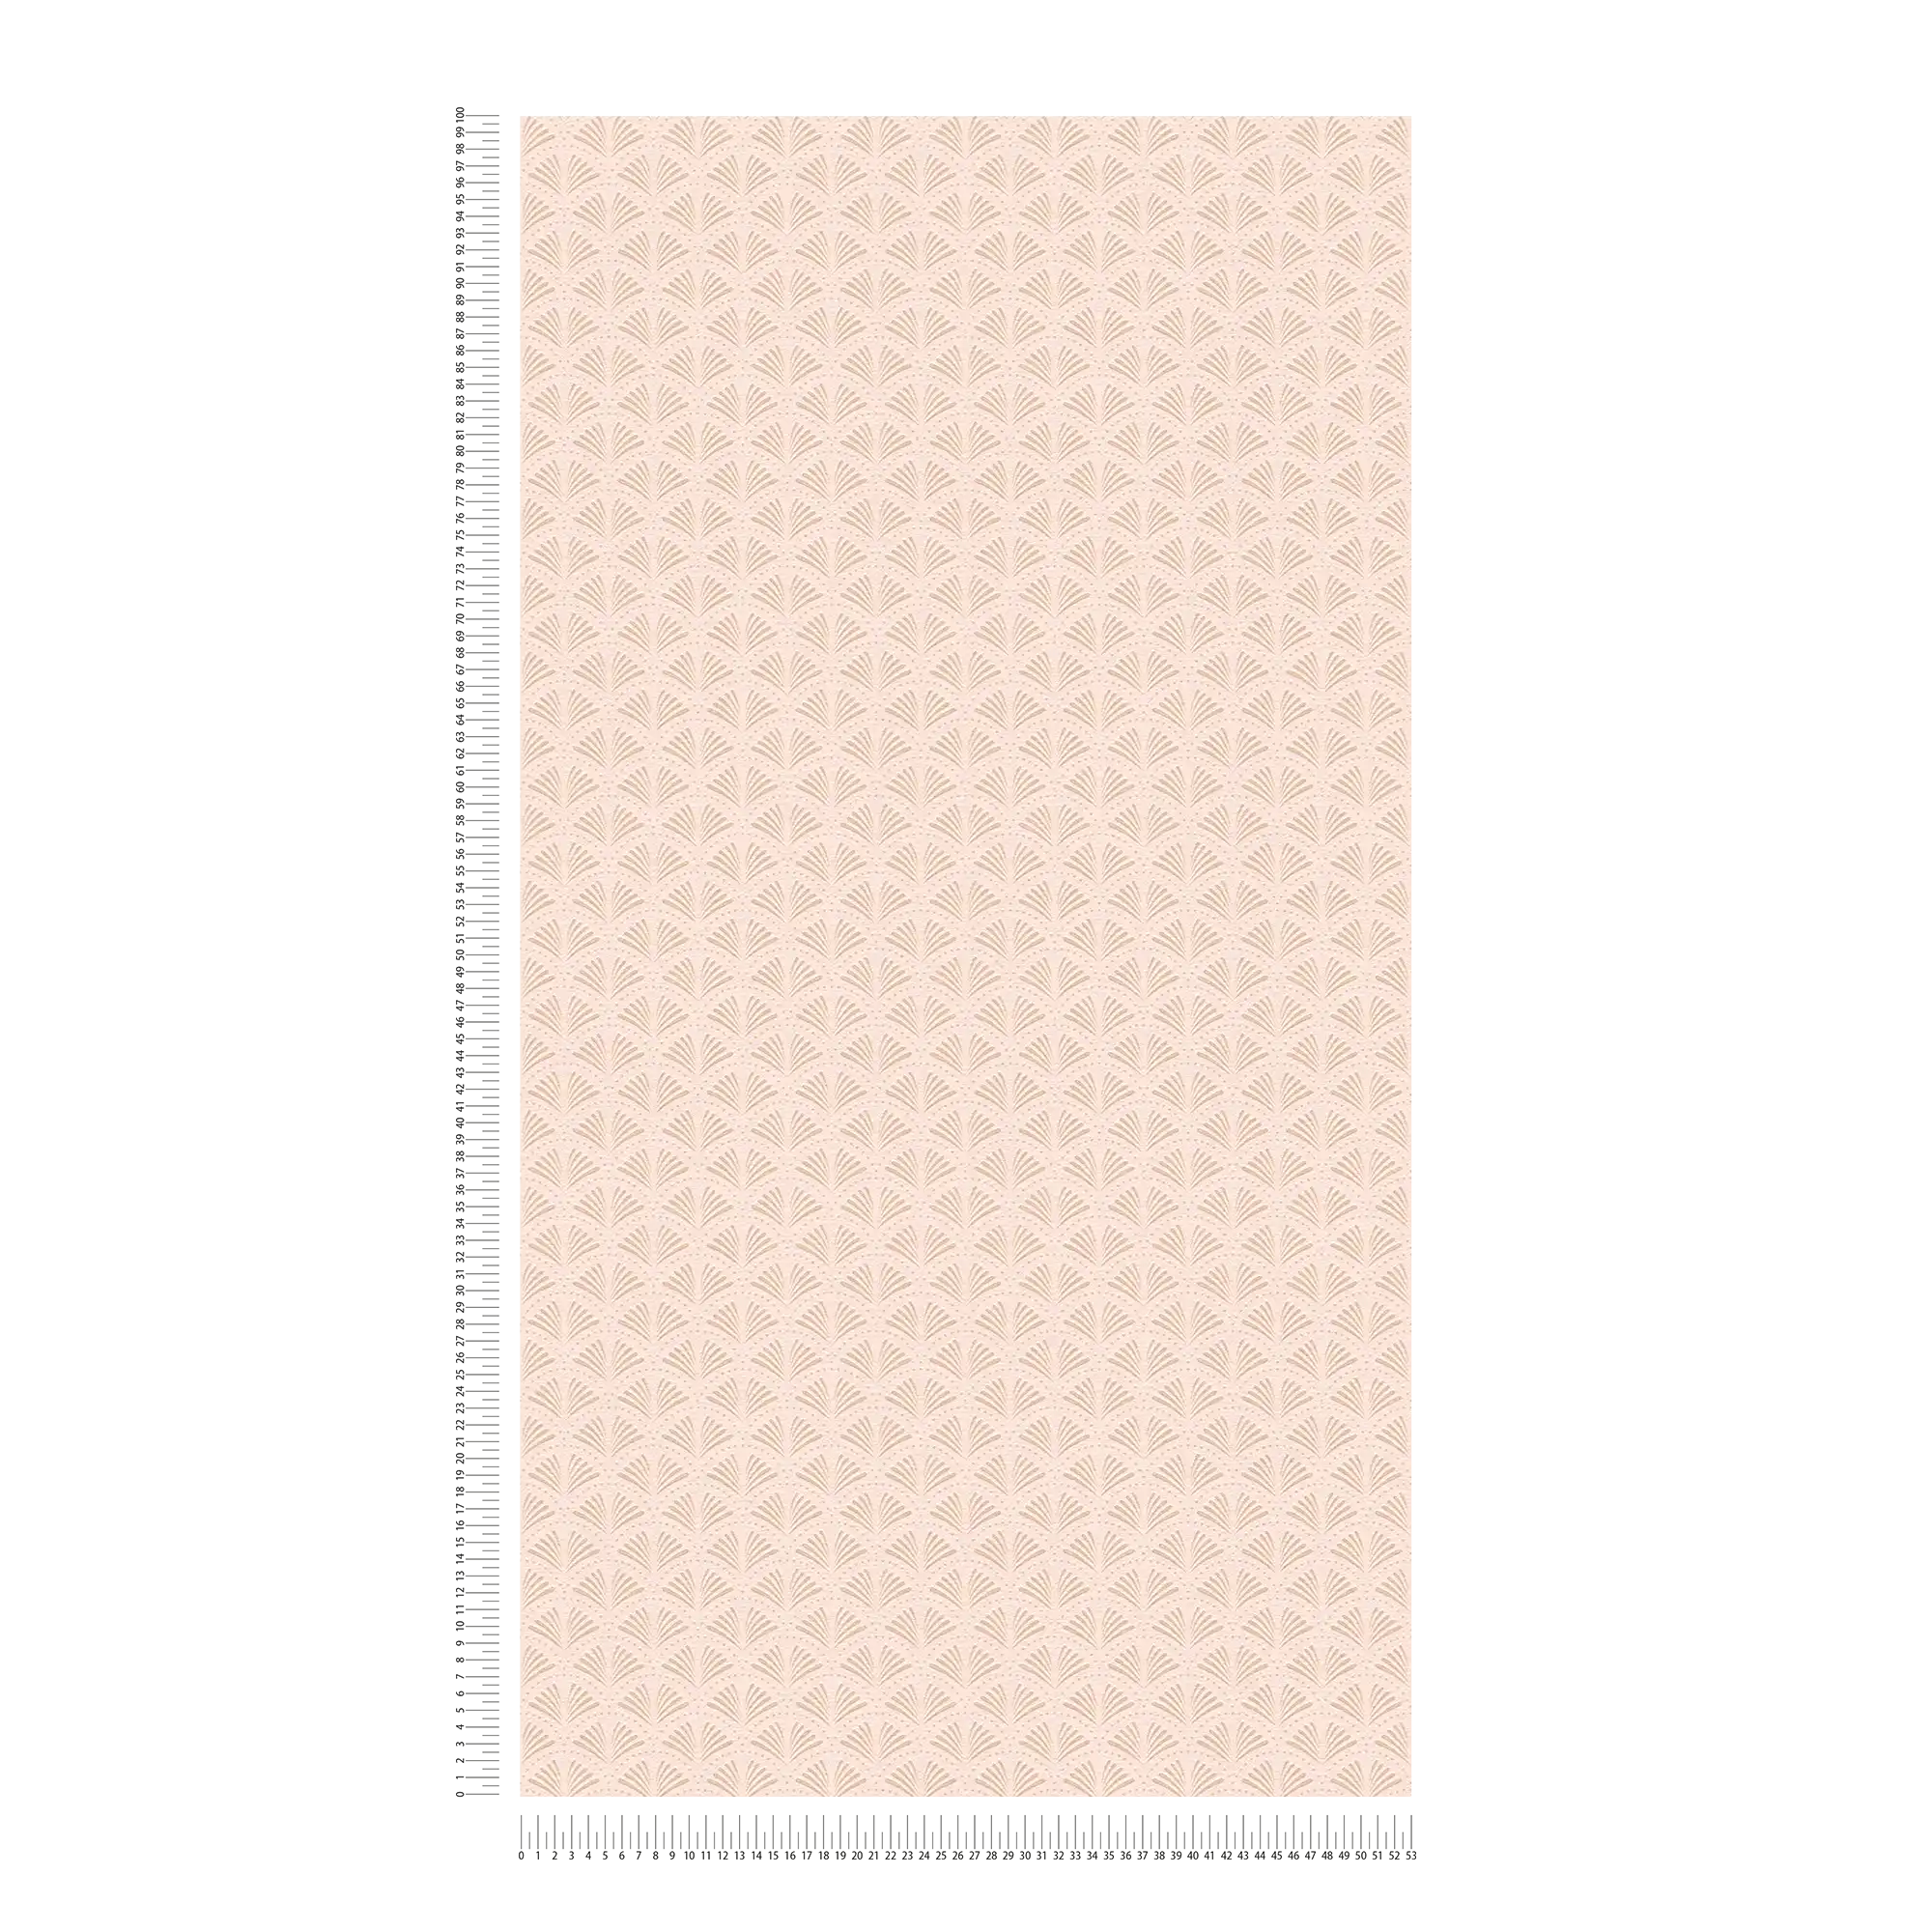             Roze vliesbehang met structuur & metallic patroon - crème, metallic, roze
        